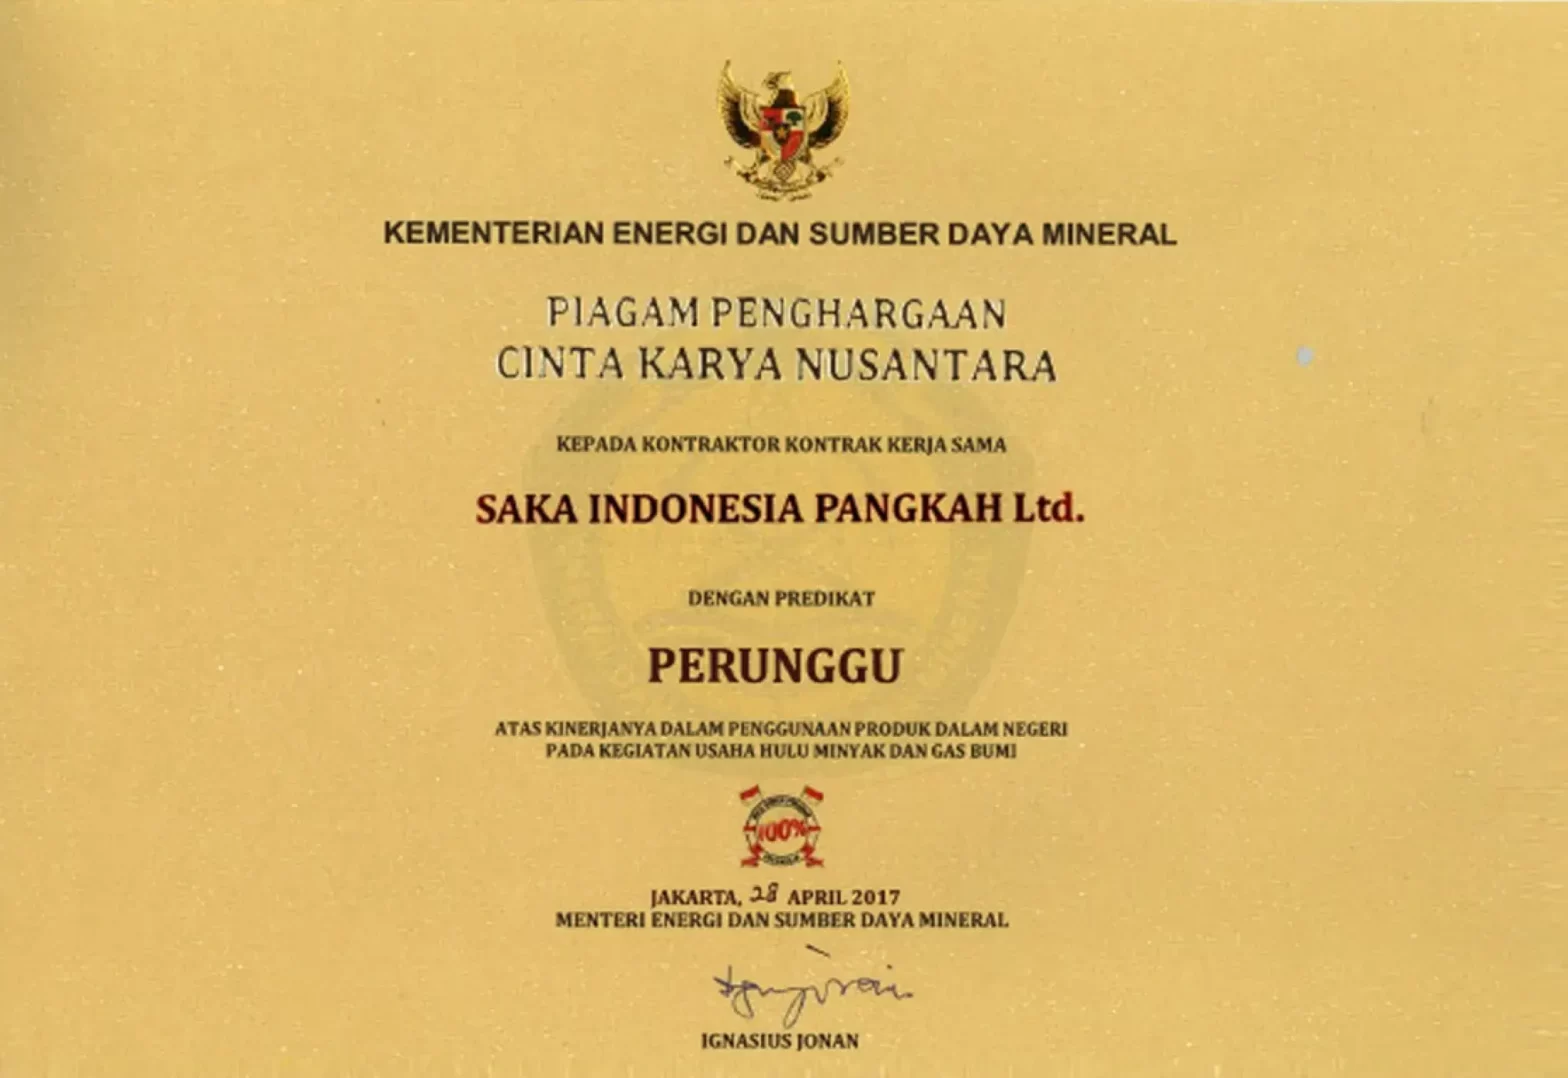 BPKP Audit and Cinta Karya Nusantara Awards